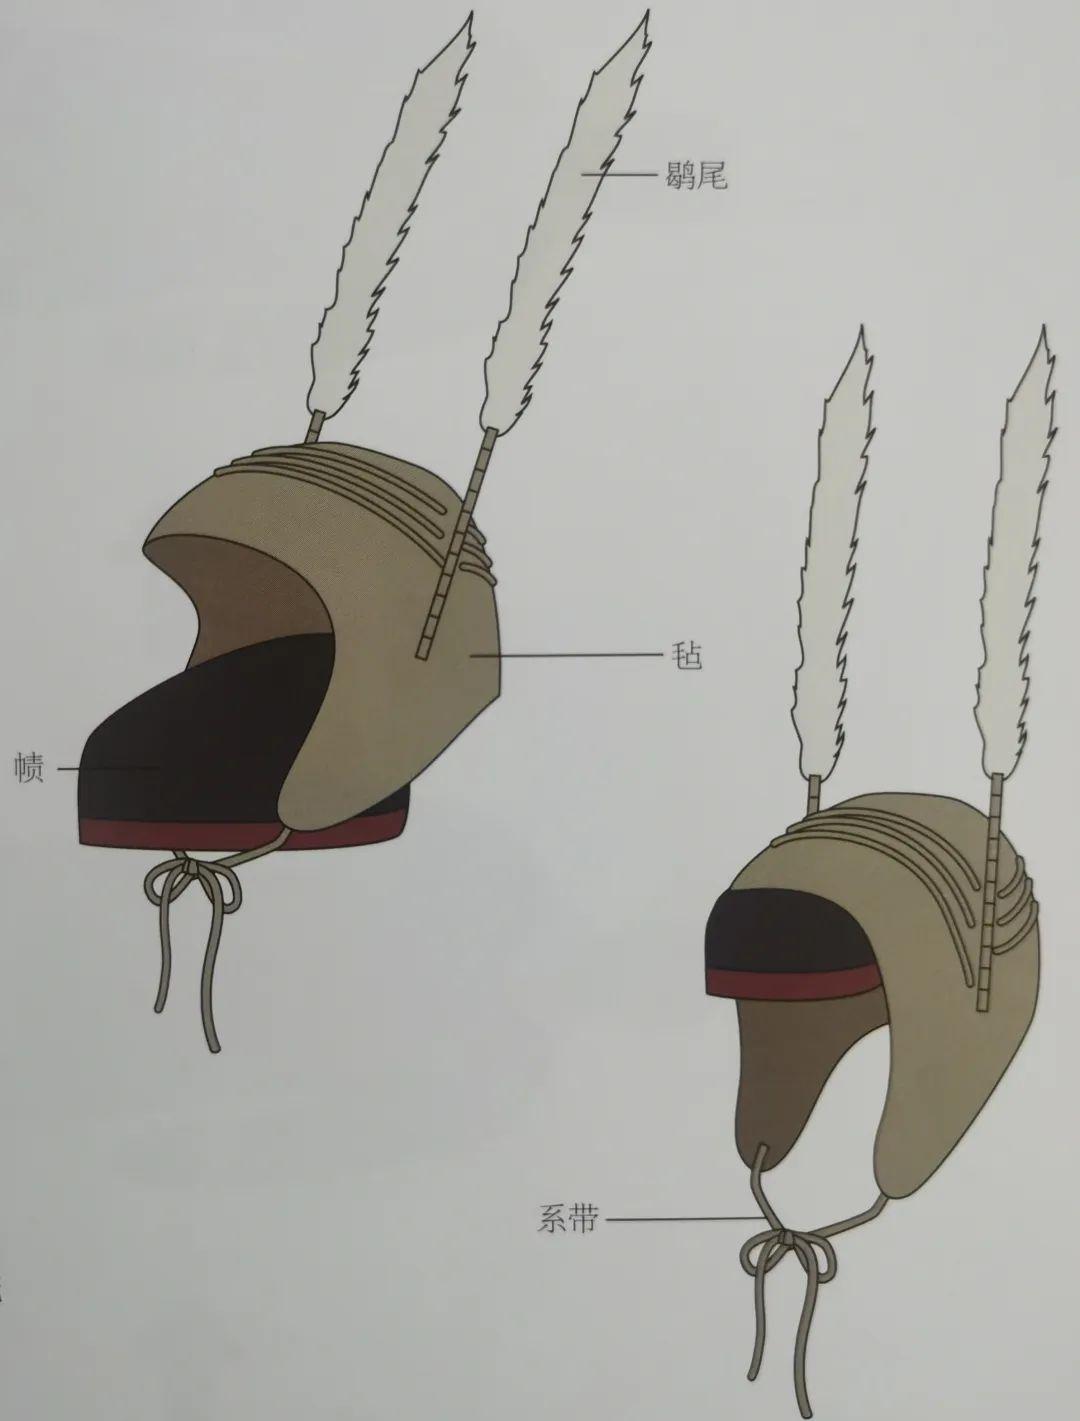 2,鹖冠鹖冠战国时期便开始使用,但直接戴在头上,汉代鹖冠则罩在帻上